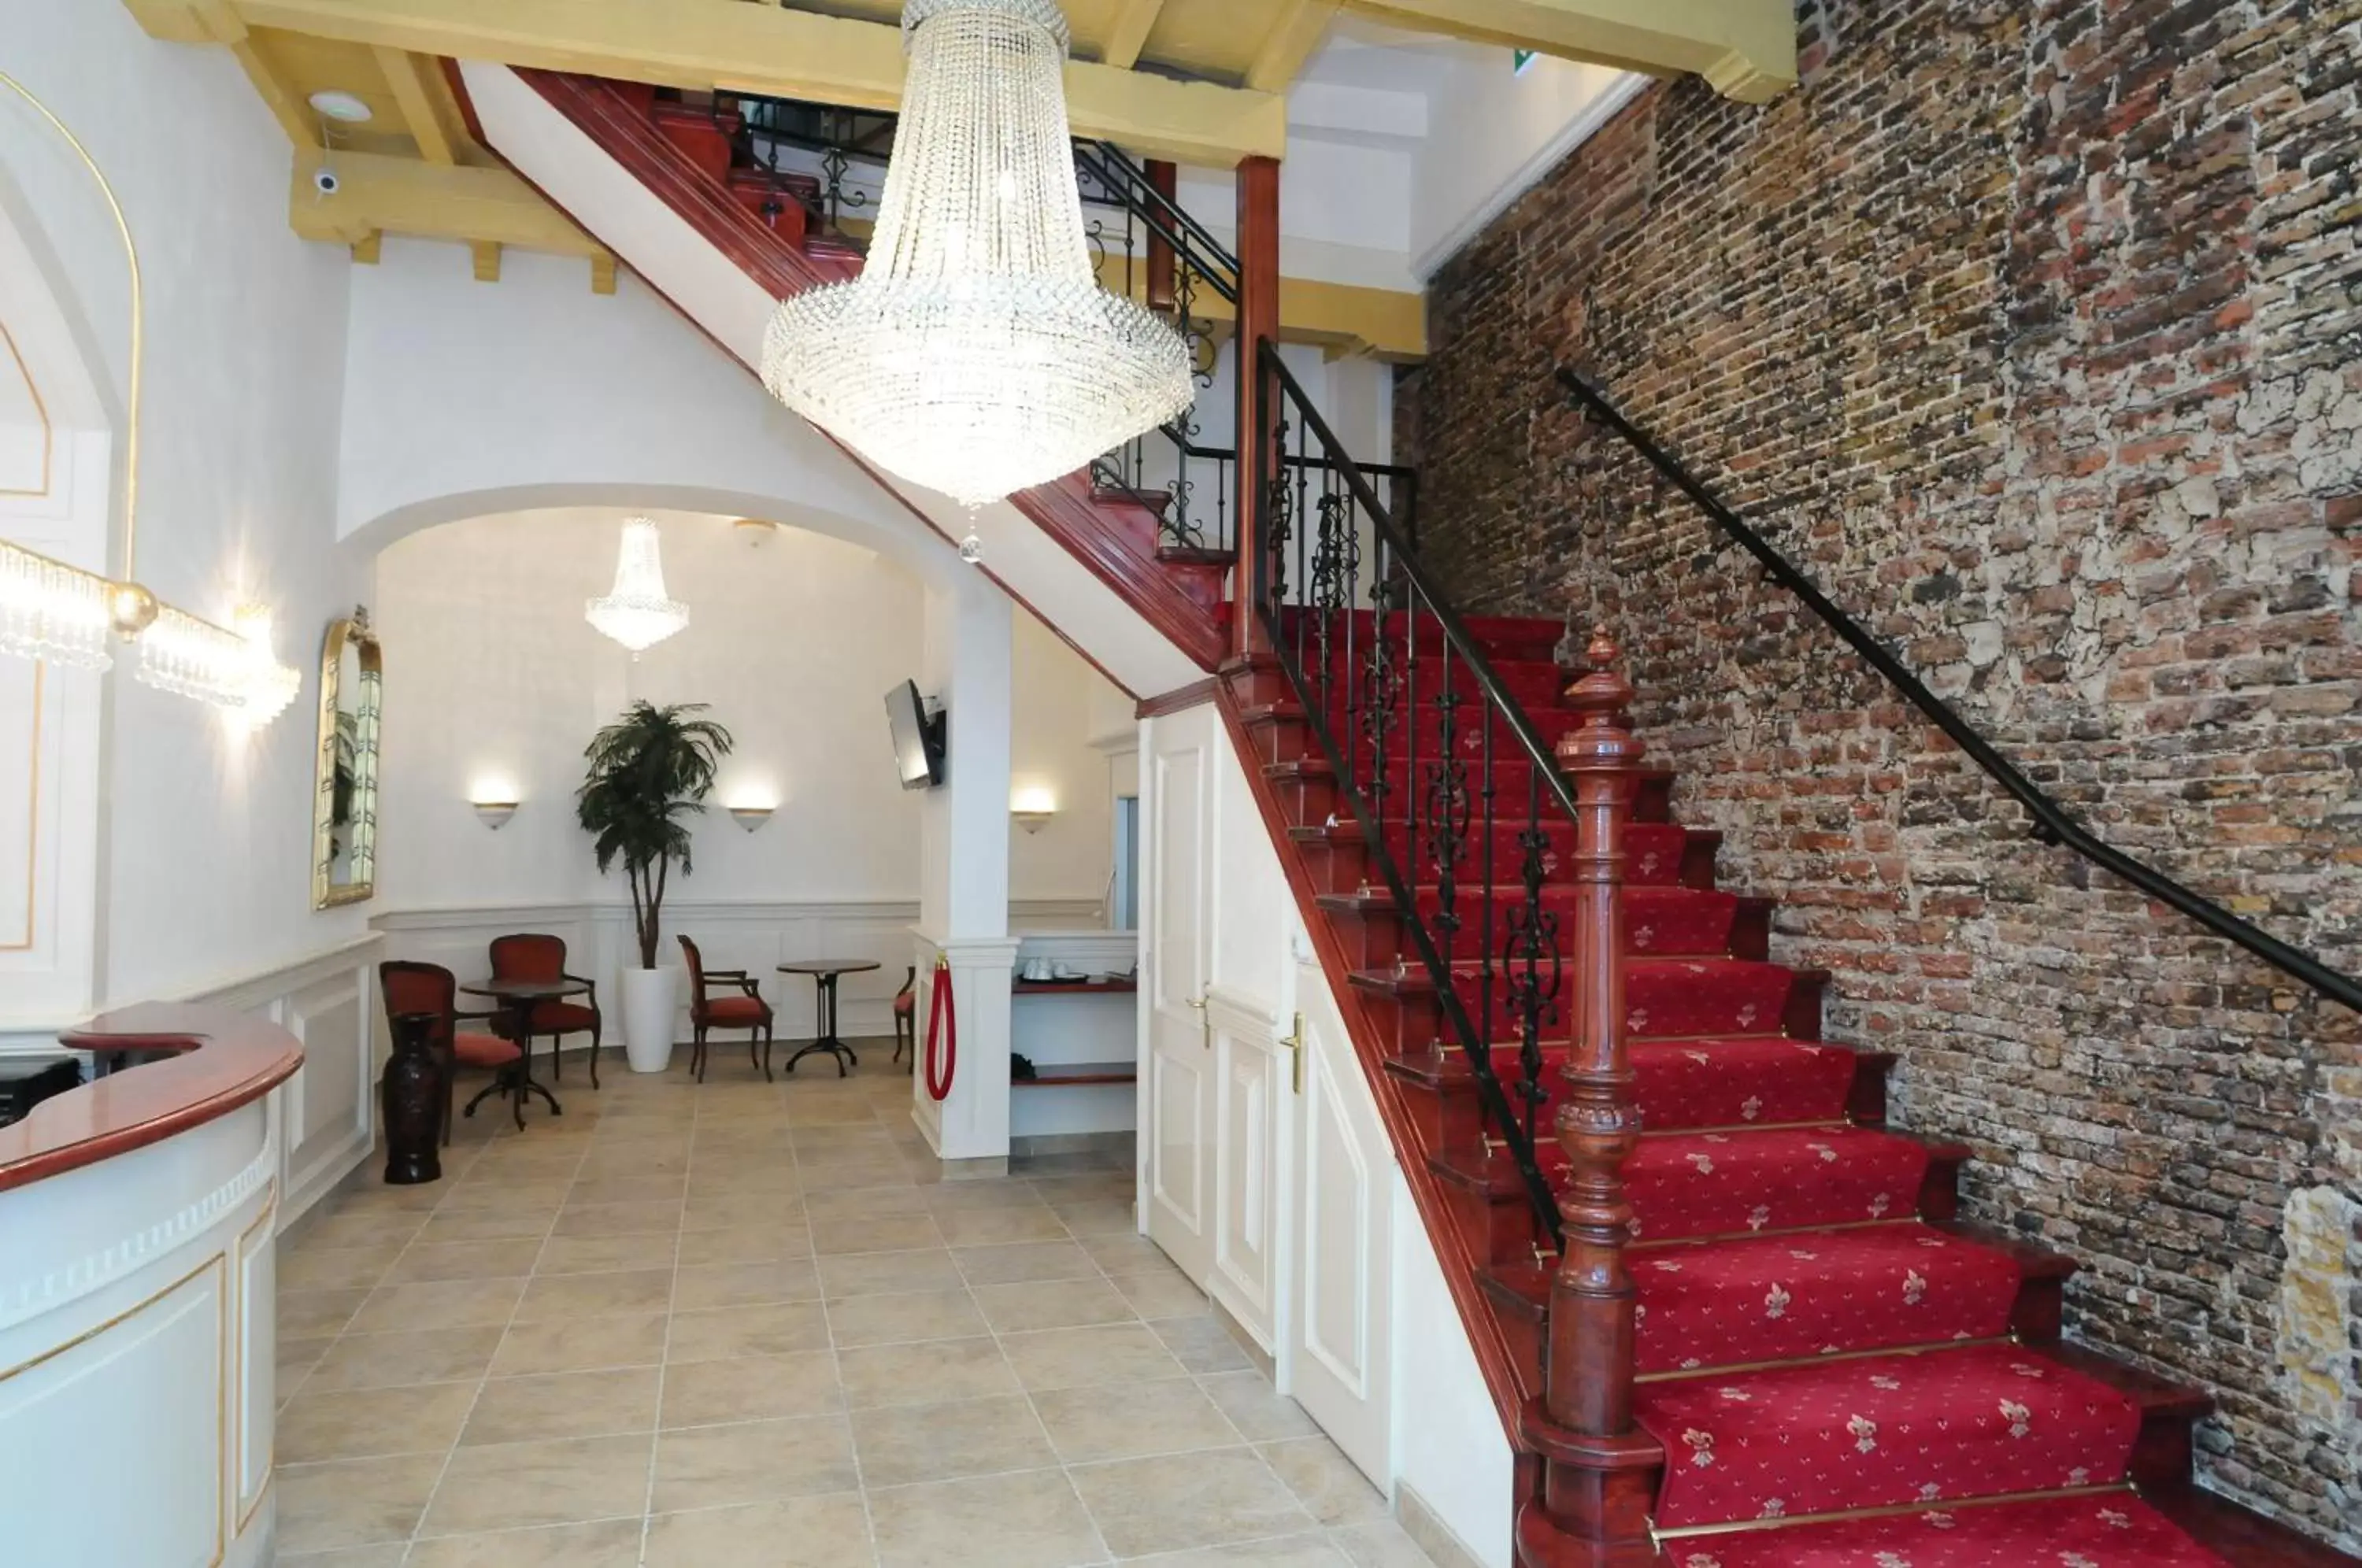 Lobby or reception in Hotel De Gulden Waagen